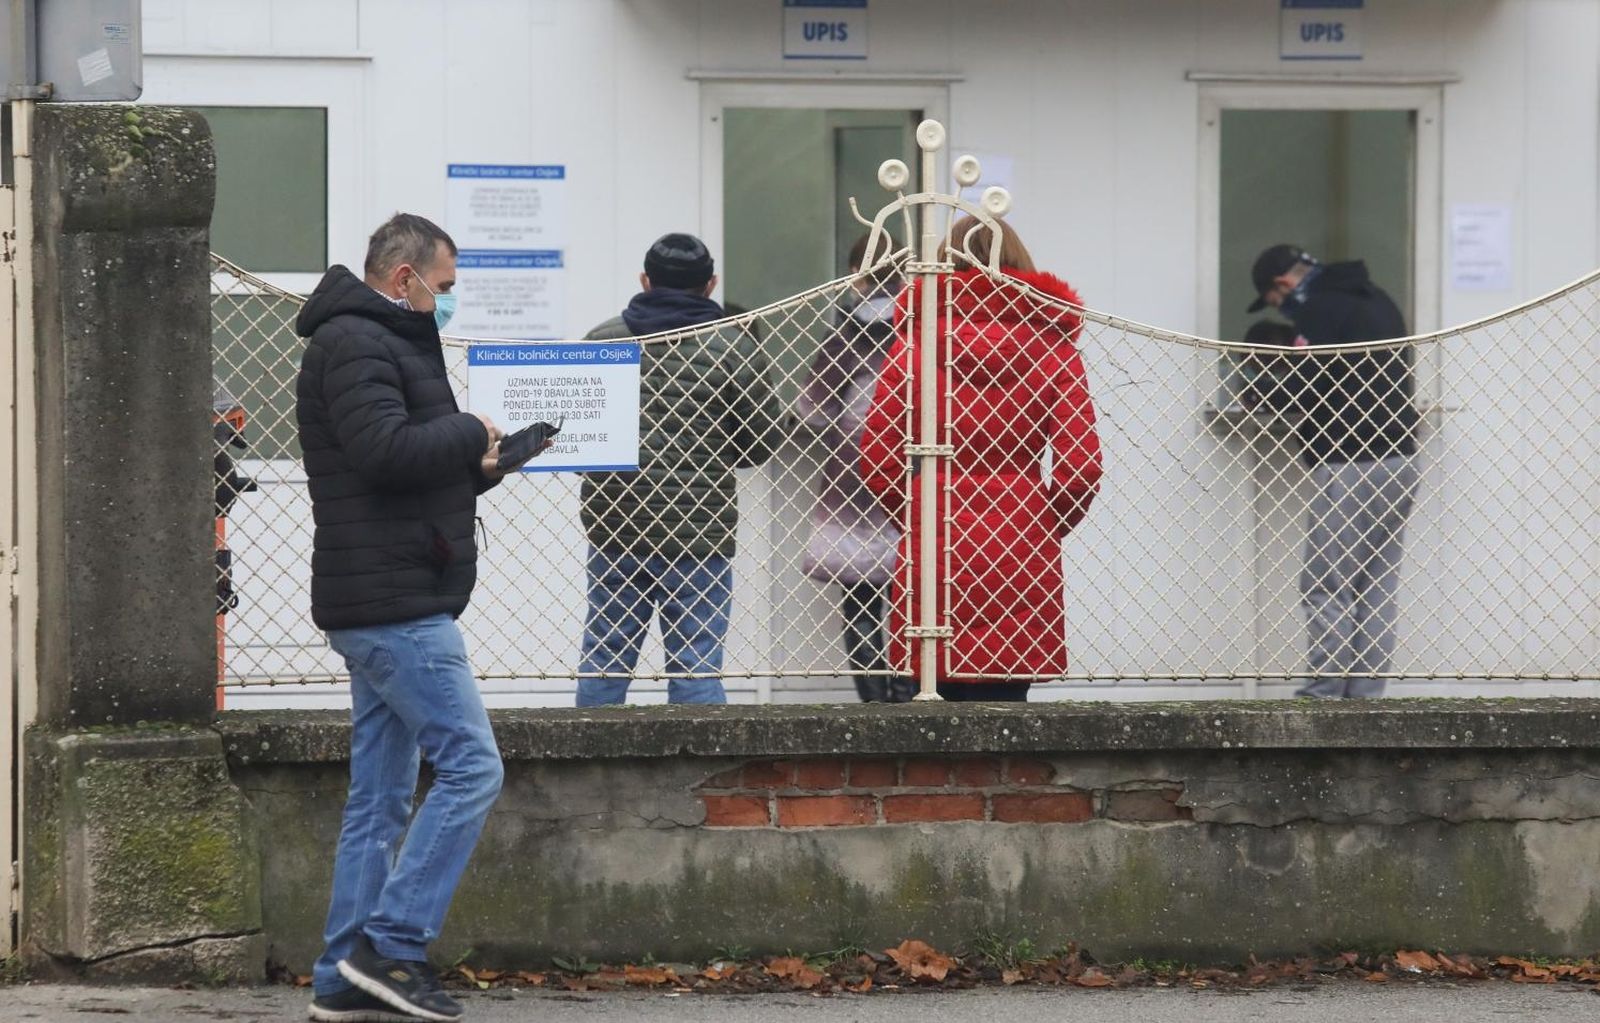 04.01.2021., Osijek - U Osijeku opada broj zarazenih tj. pozitivnih na covid 19 i guzve koje su se stvarale zbog velikog broja onih koji su trebali testiranje, se smanjuju . Photo: Dubravka Petric/PIXSELL